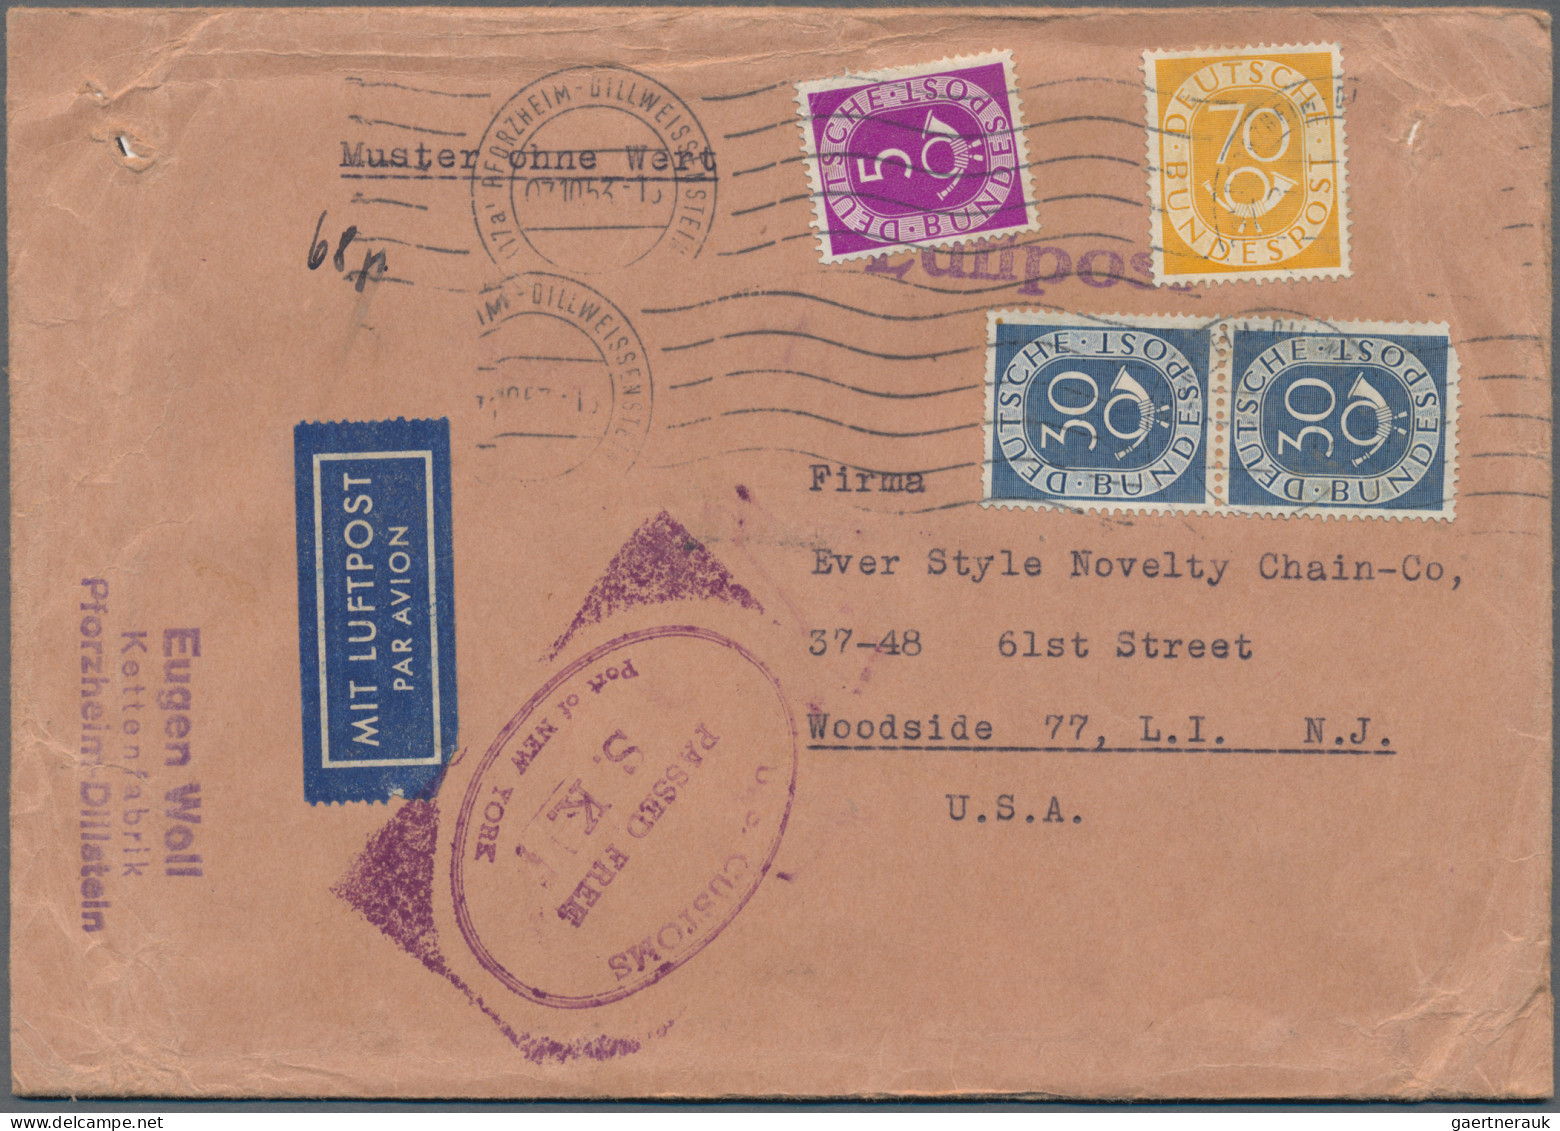 Deutschland nach 1945: 1945/54, umfangreicher Posten Briefe und Ganzsachen, dabe